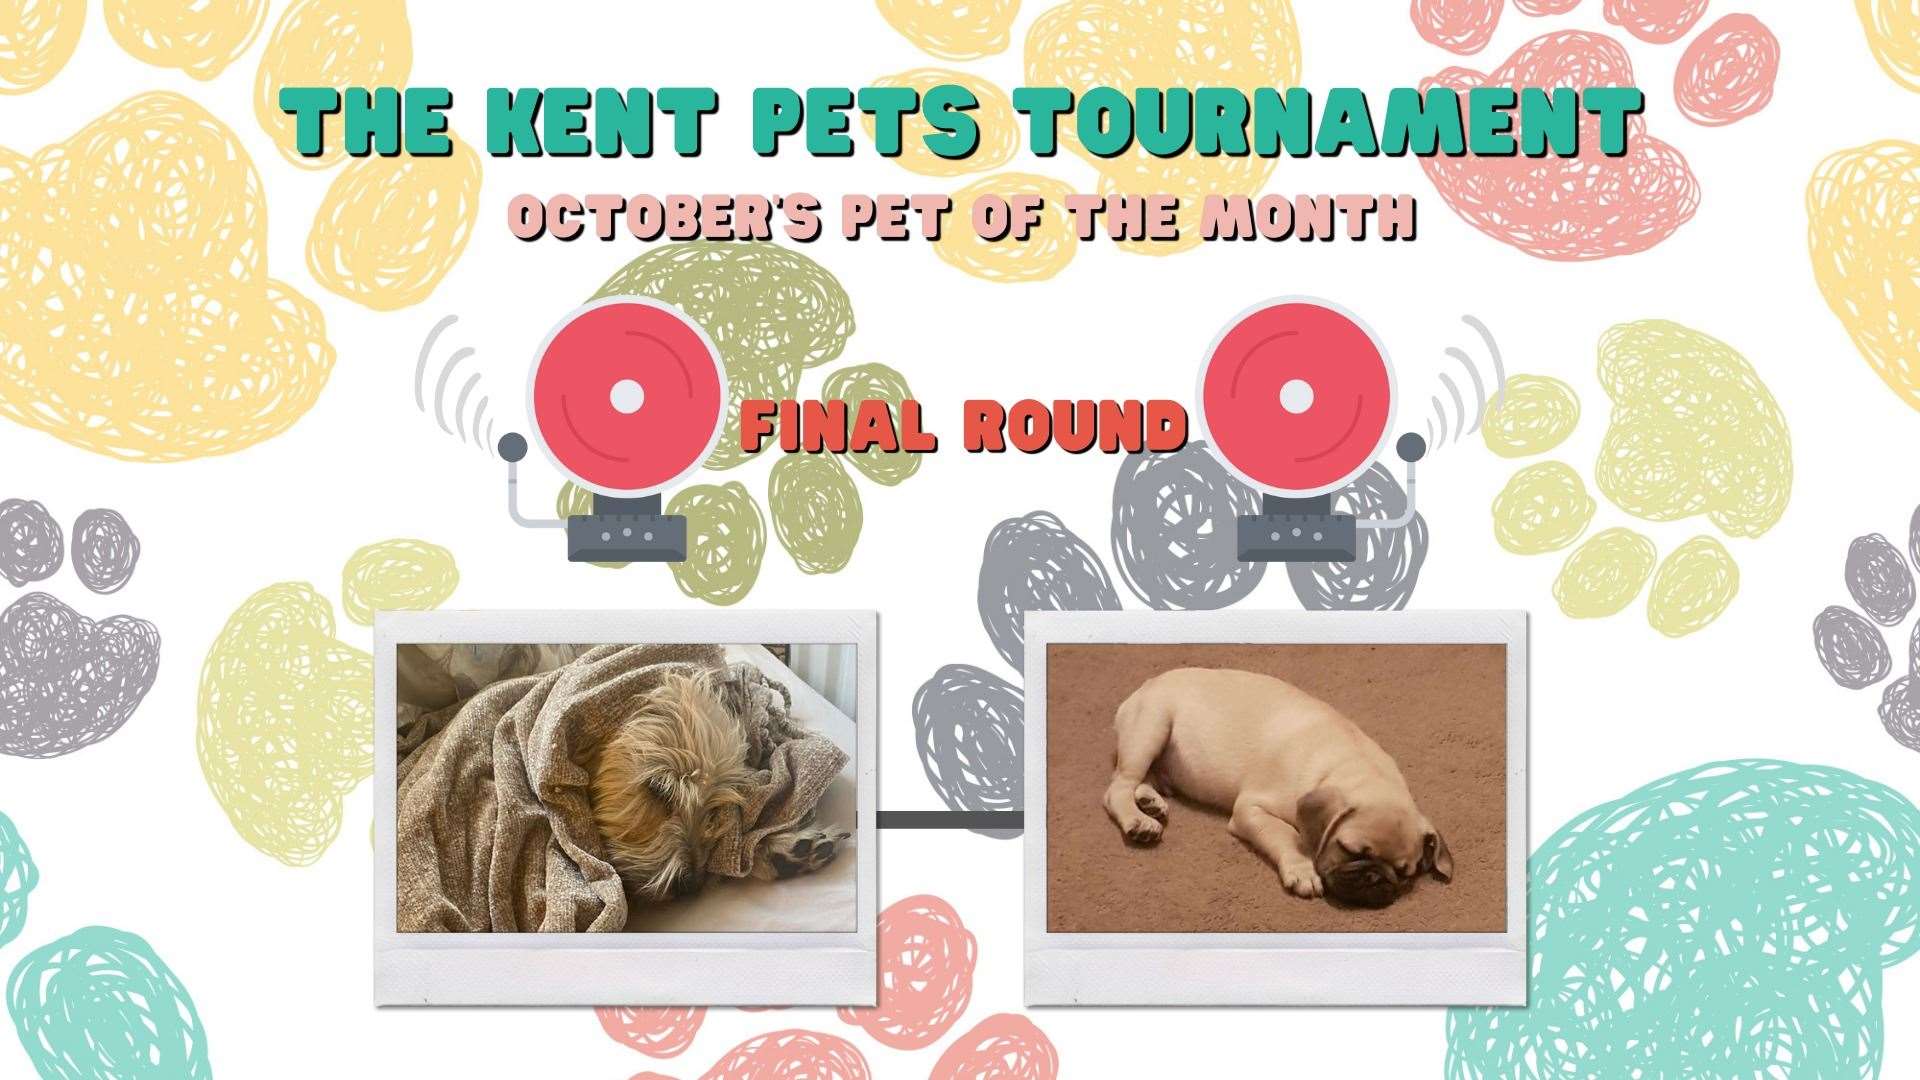 Who should win October's Kent Pets Tournament?